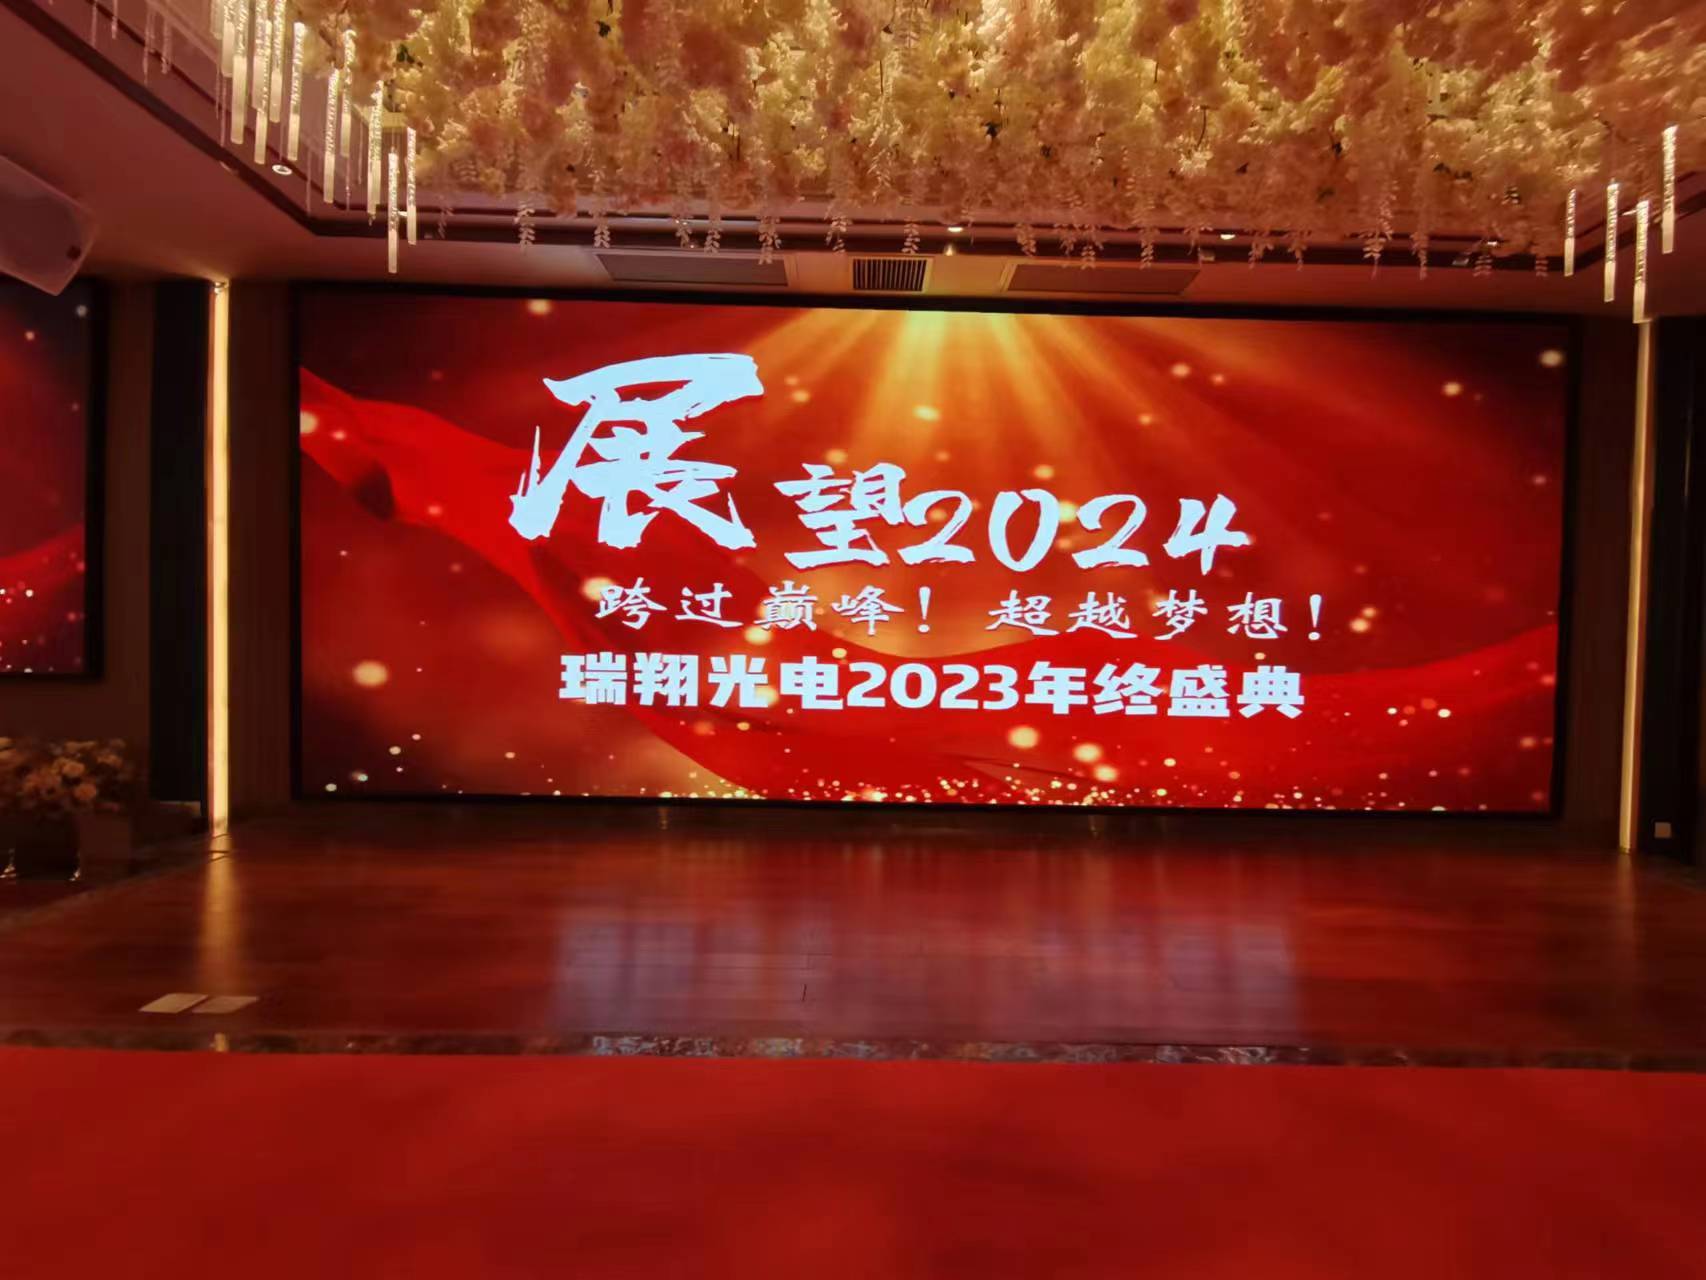 Ruixiang 2023 večírek na konci roku pro všechny zaměstnance